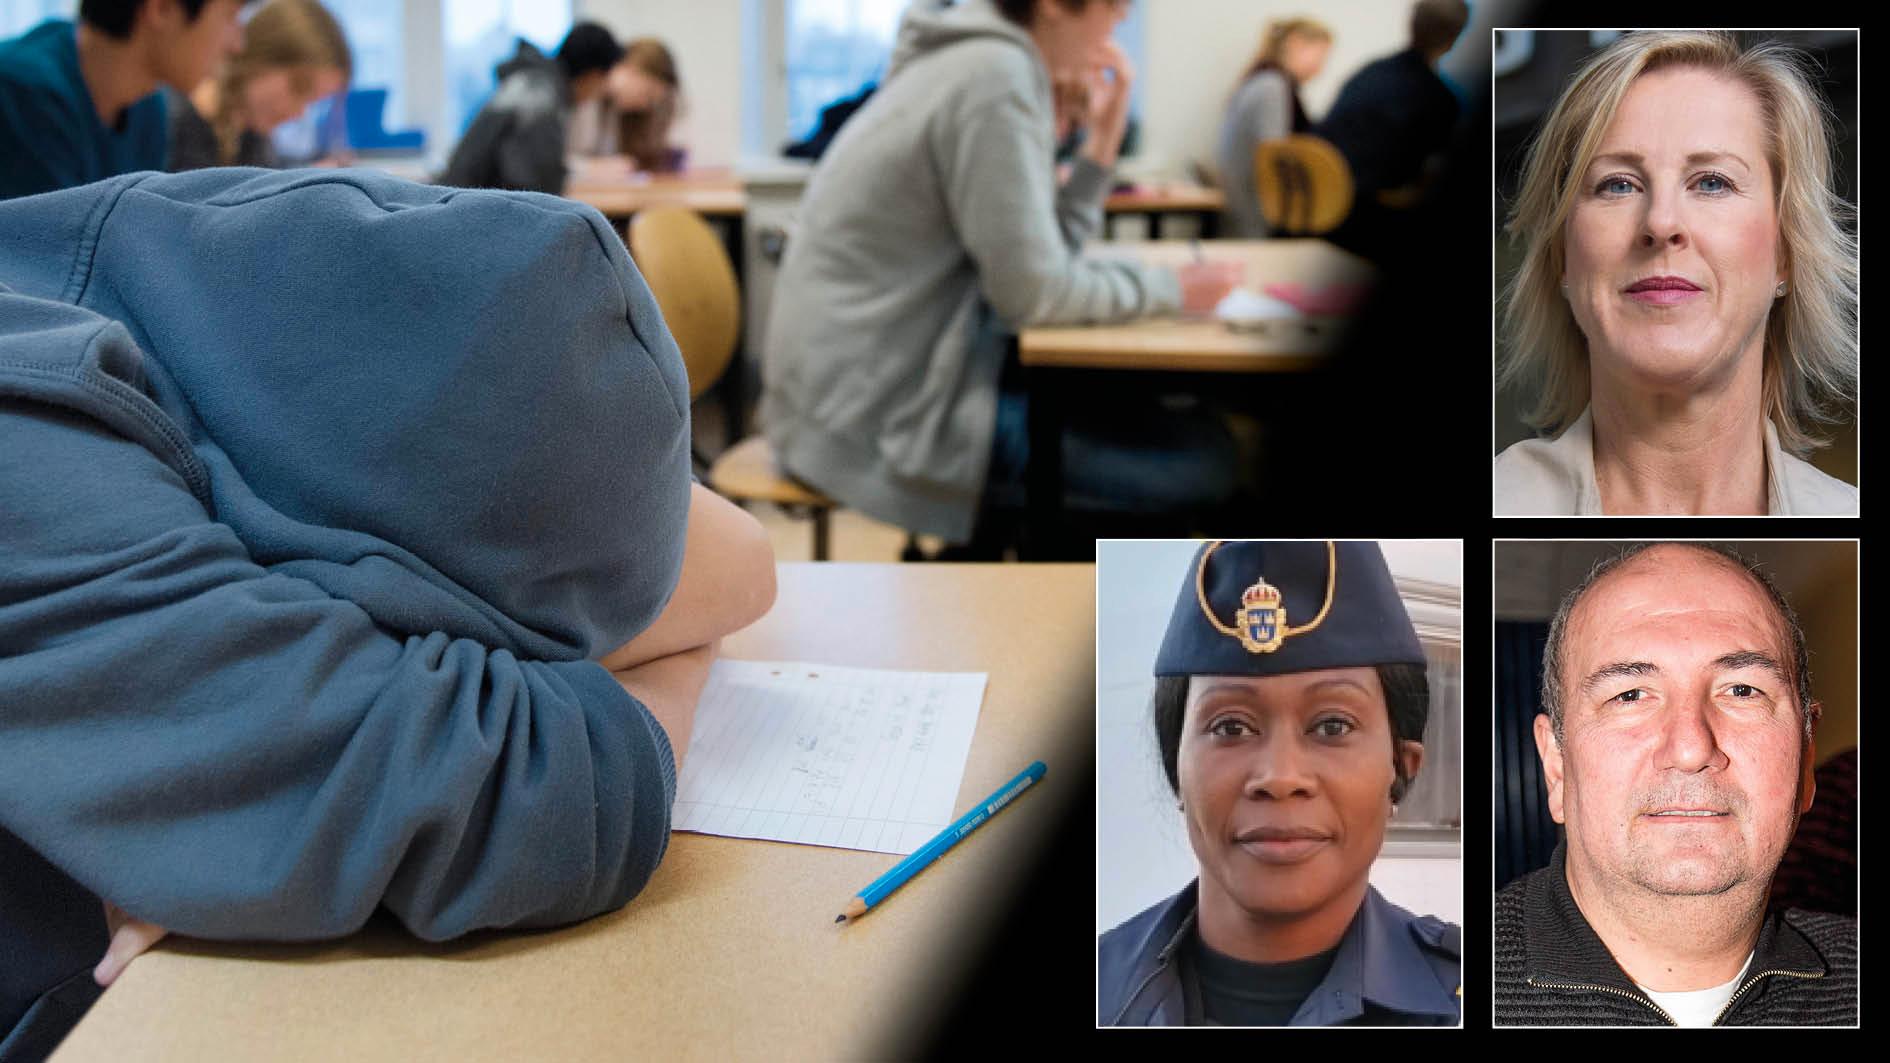 Vi som vet att skolan är helt avgörande för att rädda barn från utanförskap och gängkriminalitet måste skrika högre. Och vi kommer fortsätta att göra det så länge Sveriges politiker inte tar sig i kragen, skriver Åsa Fahlén, Rissa Seidou och Kurdo Baksi.